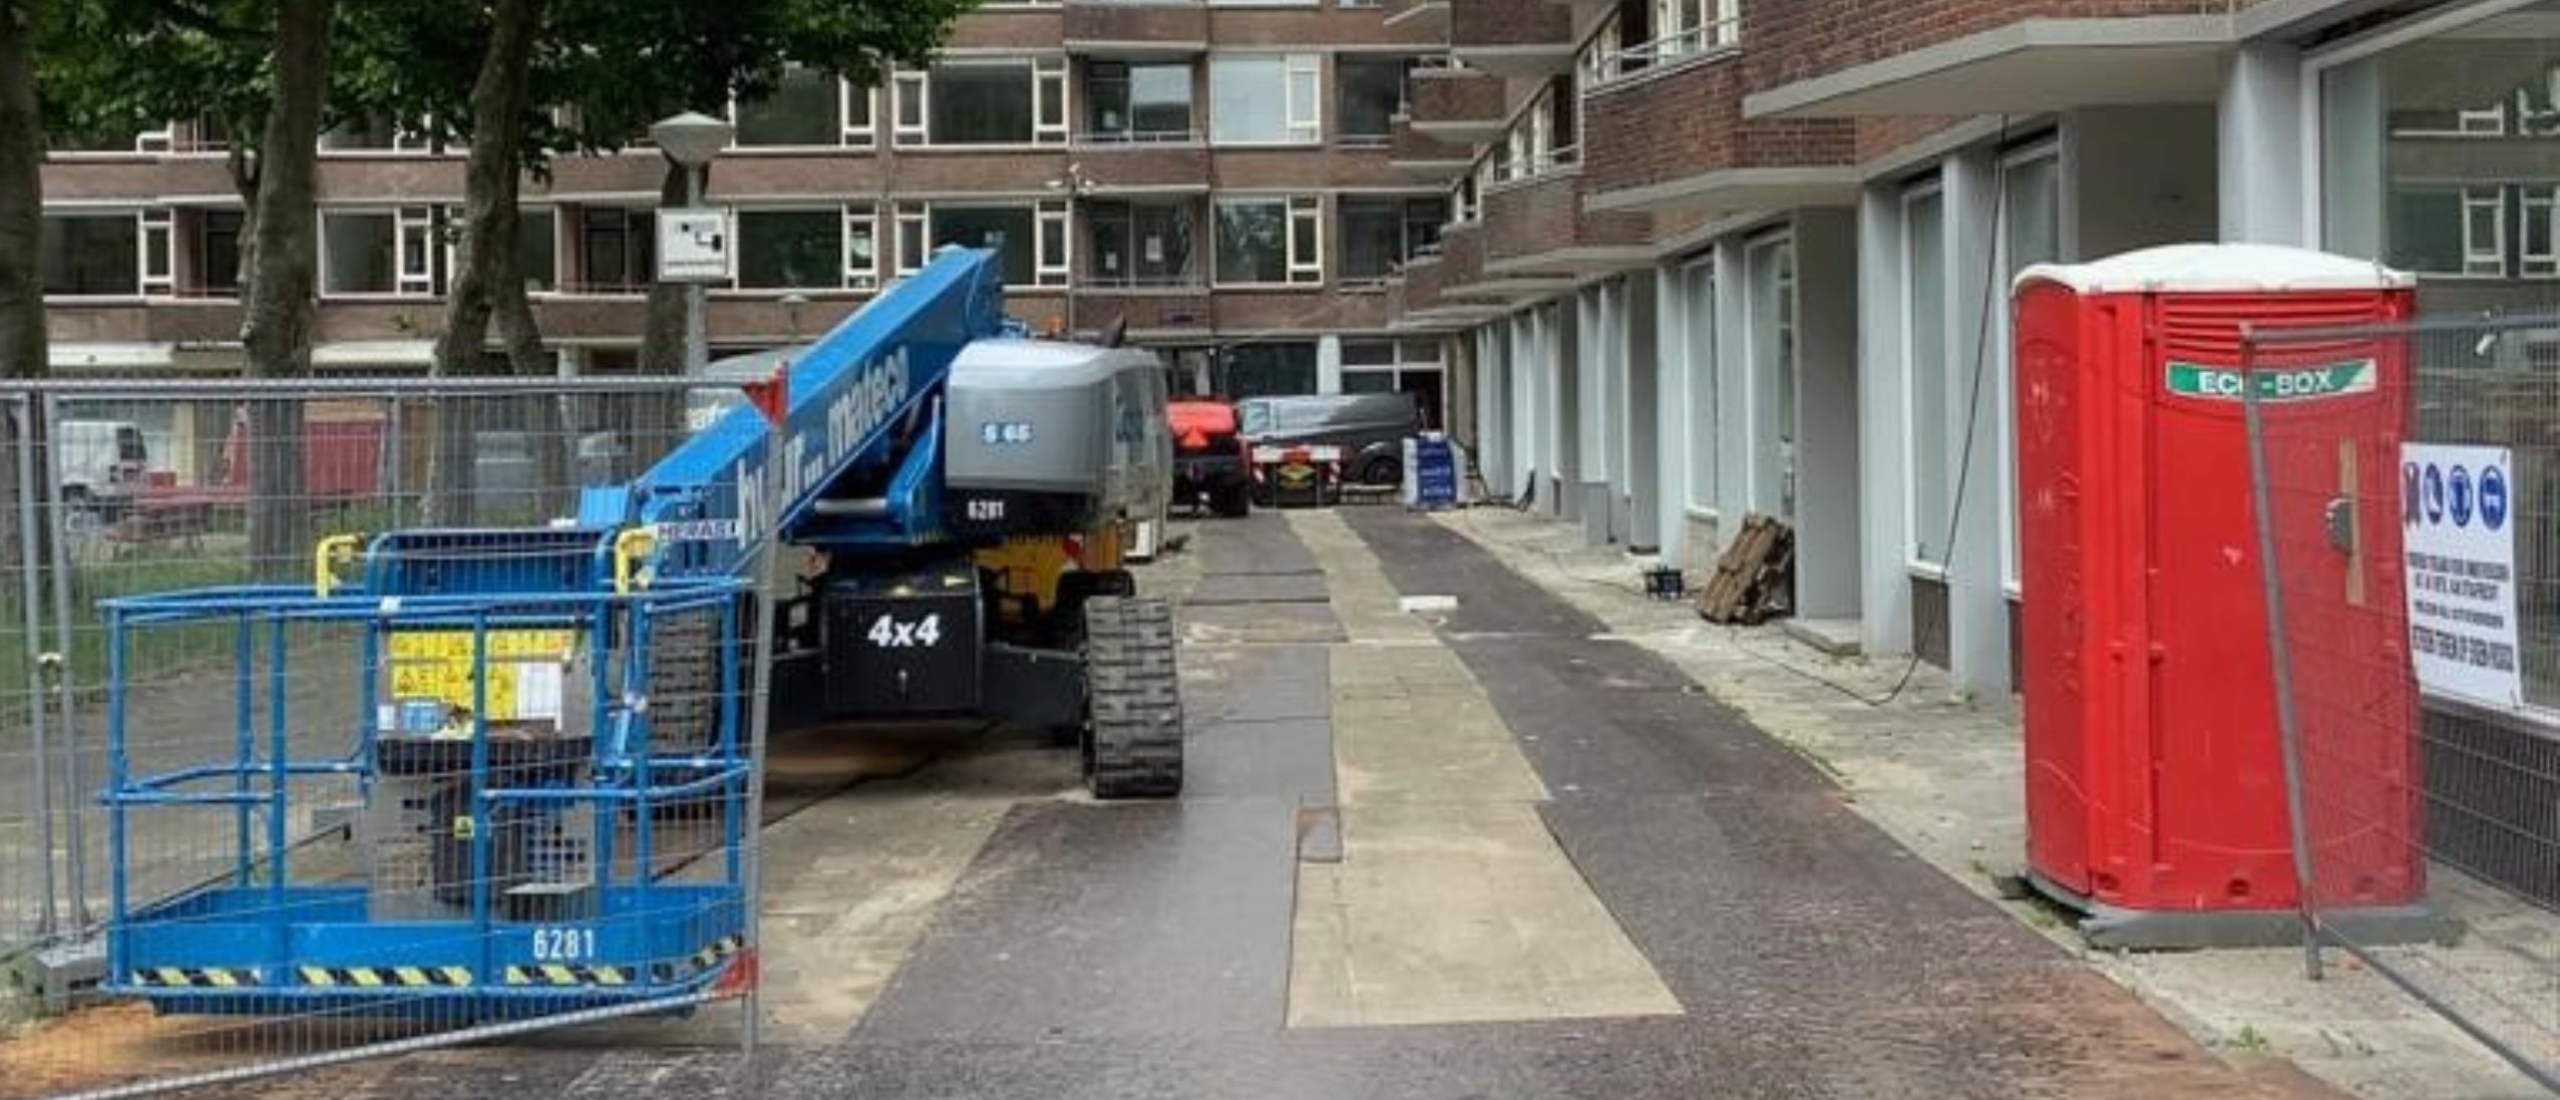 Nieuws Locas Techniek bouwt mee aan circulaire verduurzaming portiekflats in Slotervaart Amsterdam